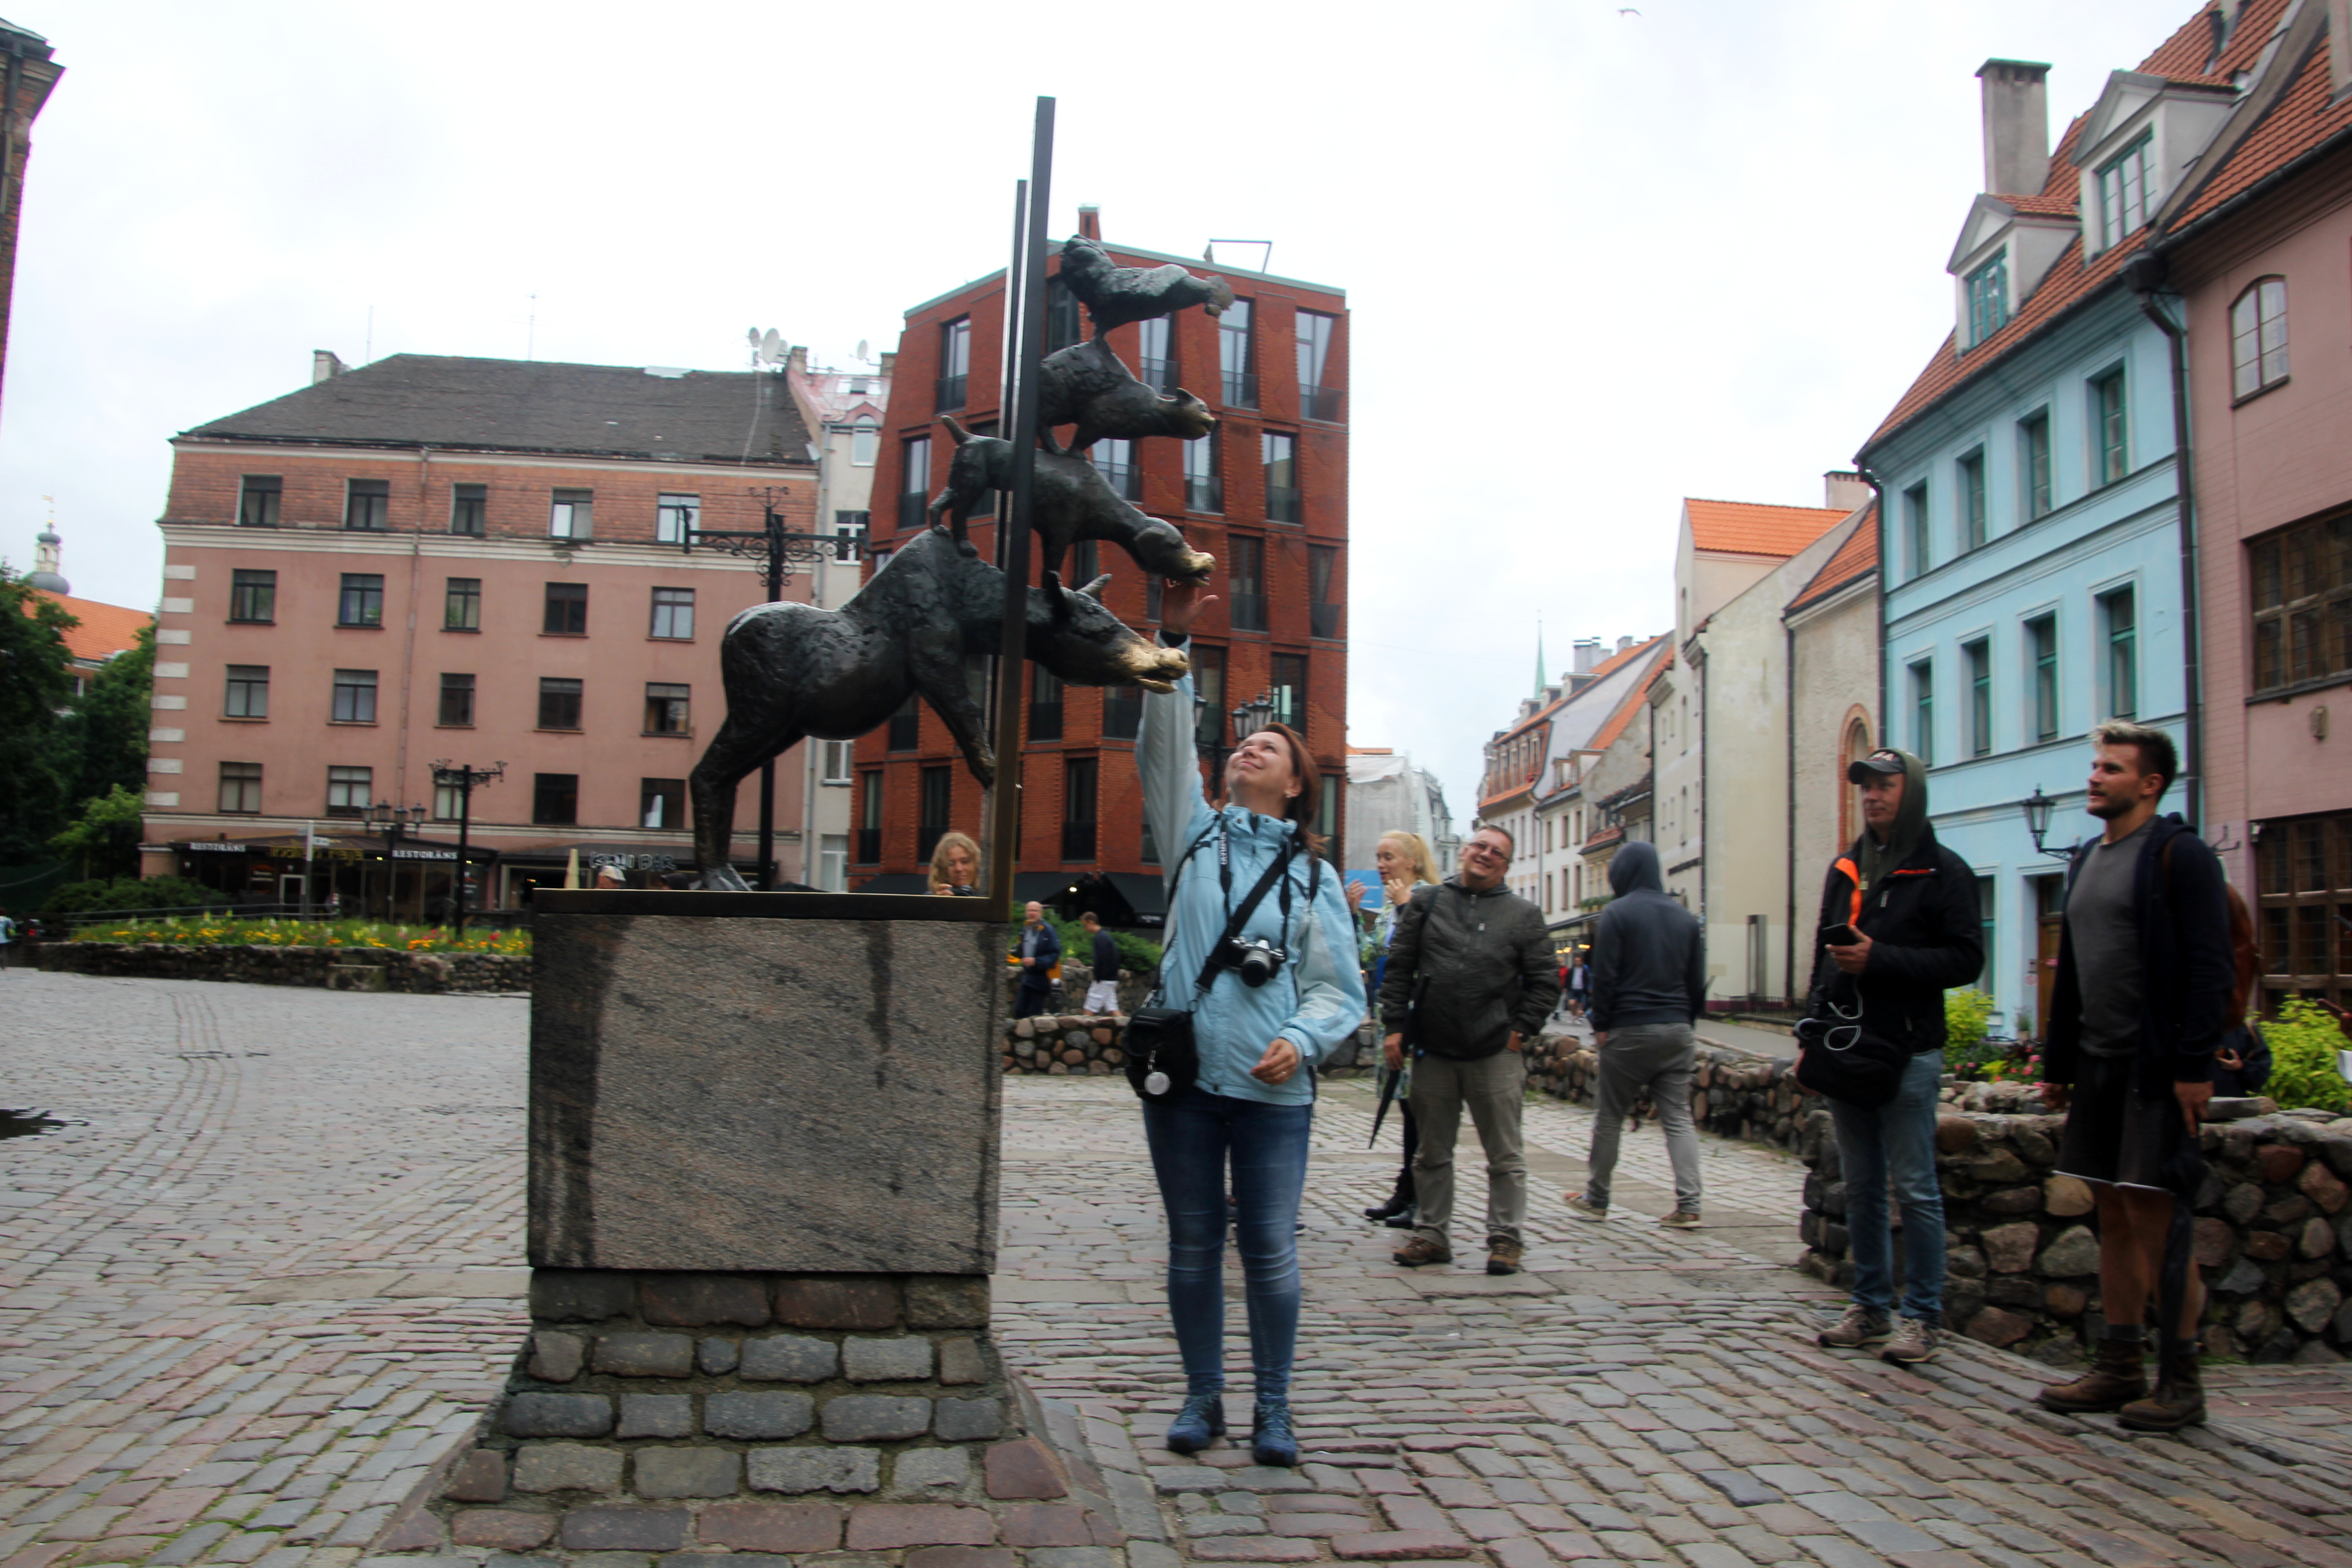 Рига и Бремен - города побратимы. На 800-летие латвийской столицы немцы подарили им статую бременским музыкантам. Если потереть нос ослу - на счастье, собаке - к деньгам, кошке - к здоровью, а петуху - для хорошего секса. Но дотянуться почти невозможно